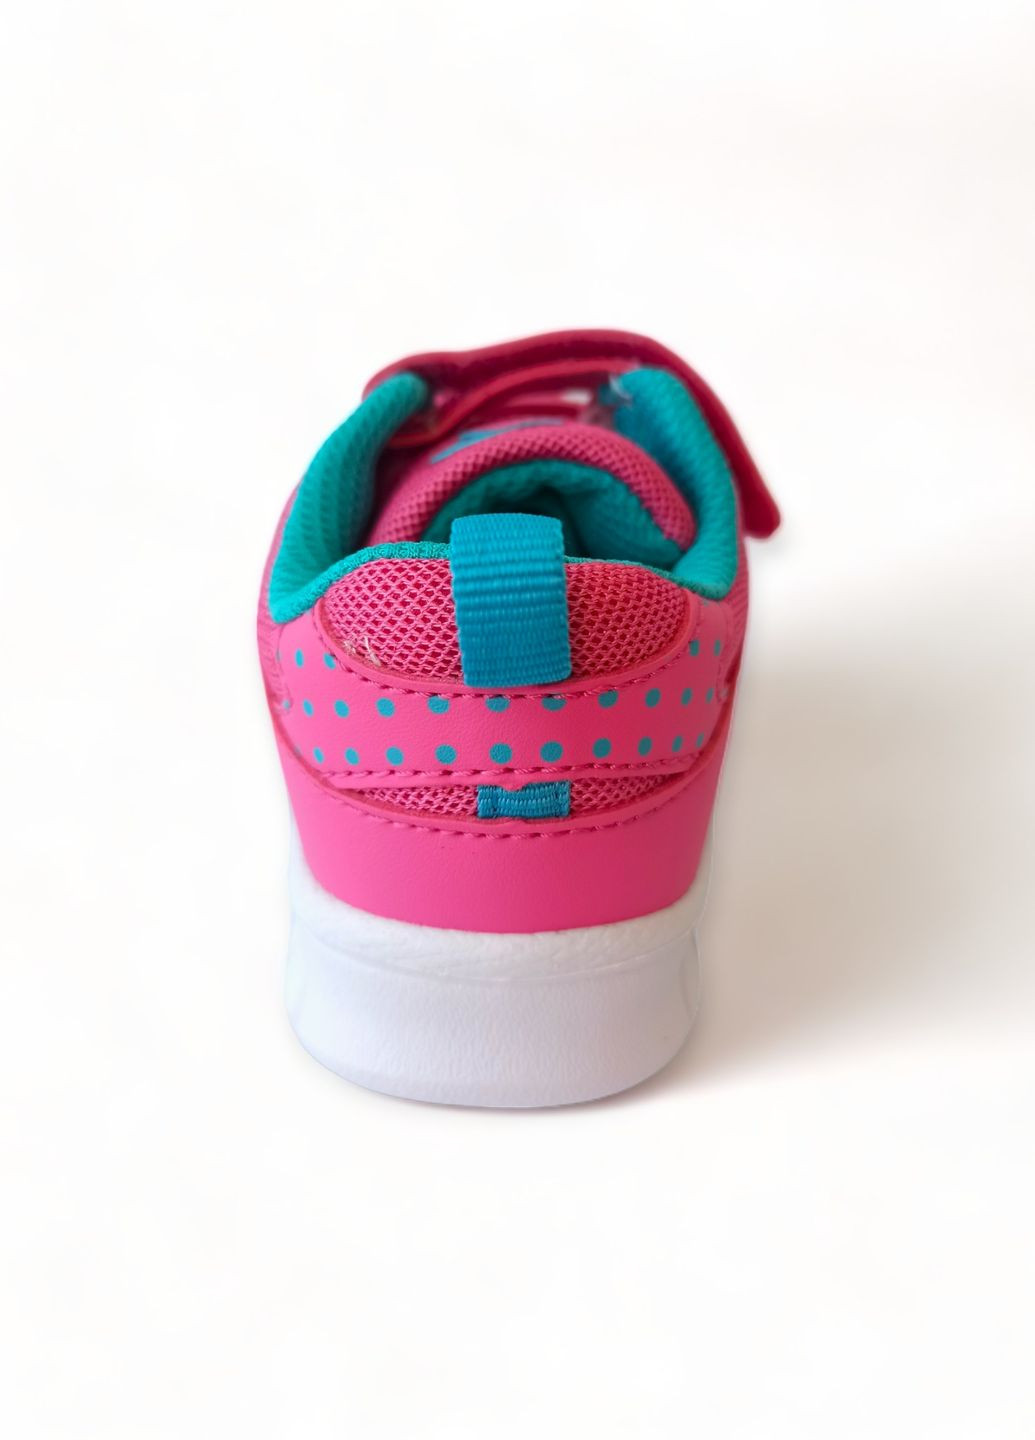 Розовые всесезонные кроссовки детские для девочки 02036/6056 (26) Kangaroos